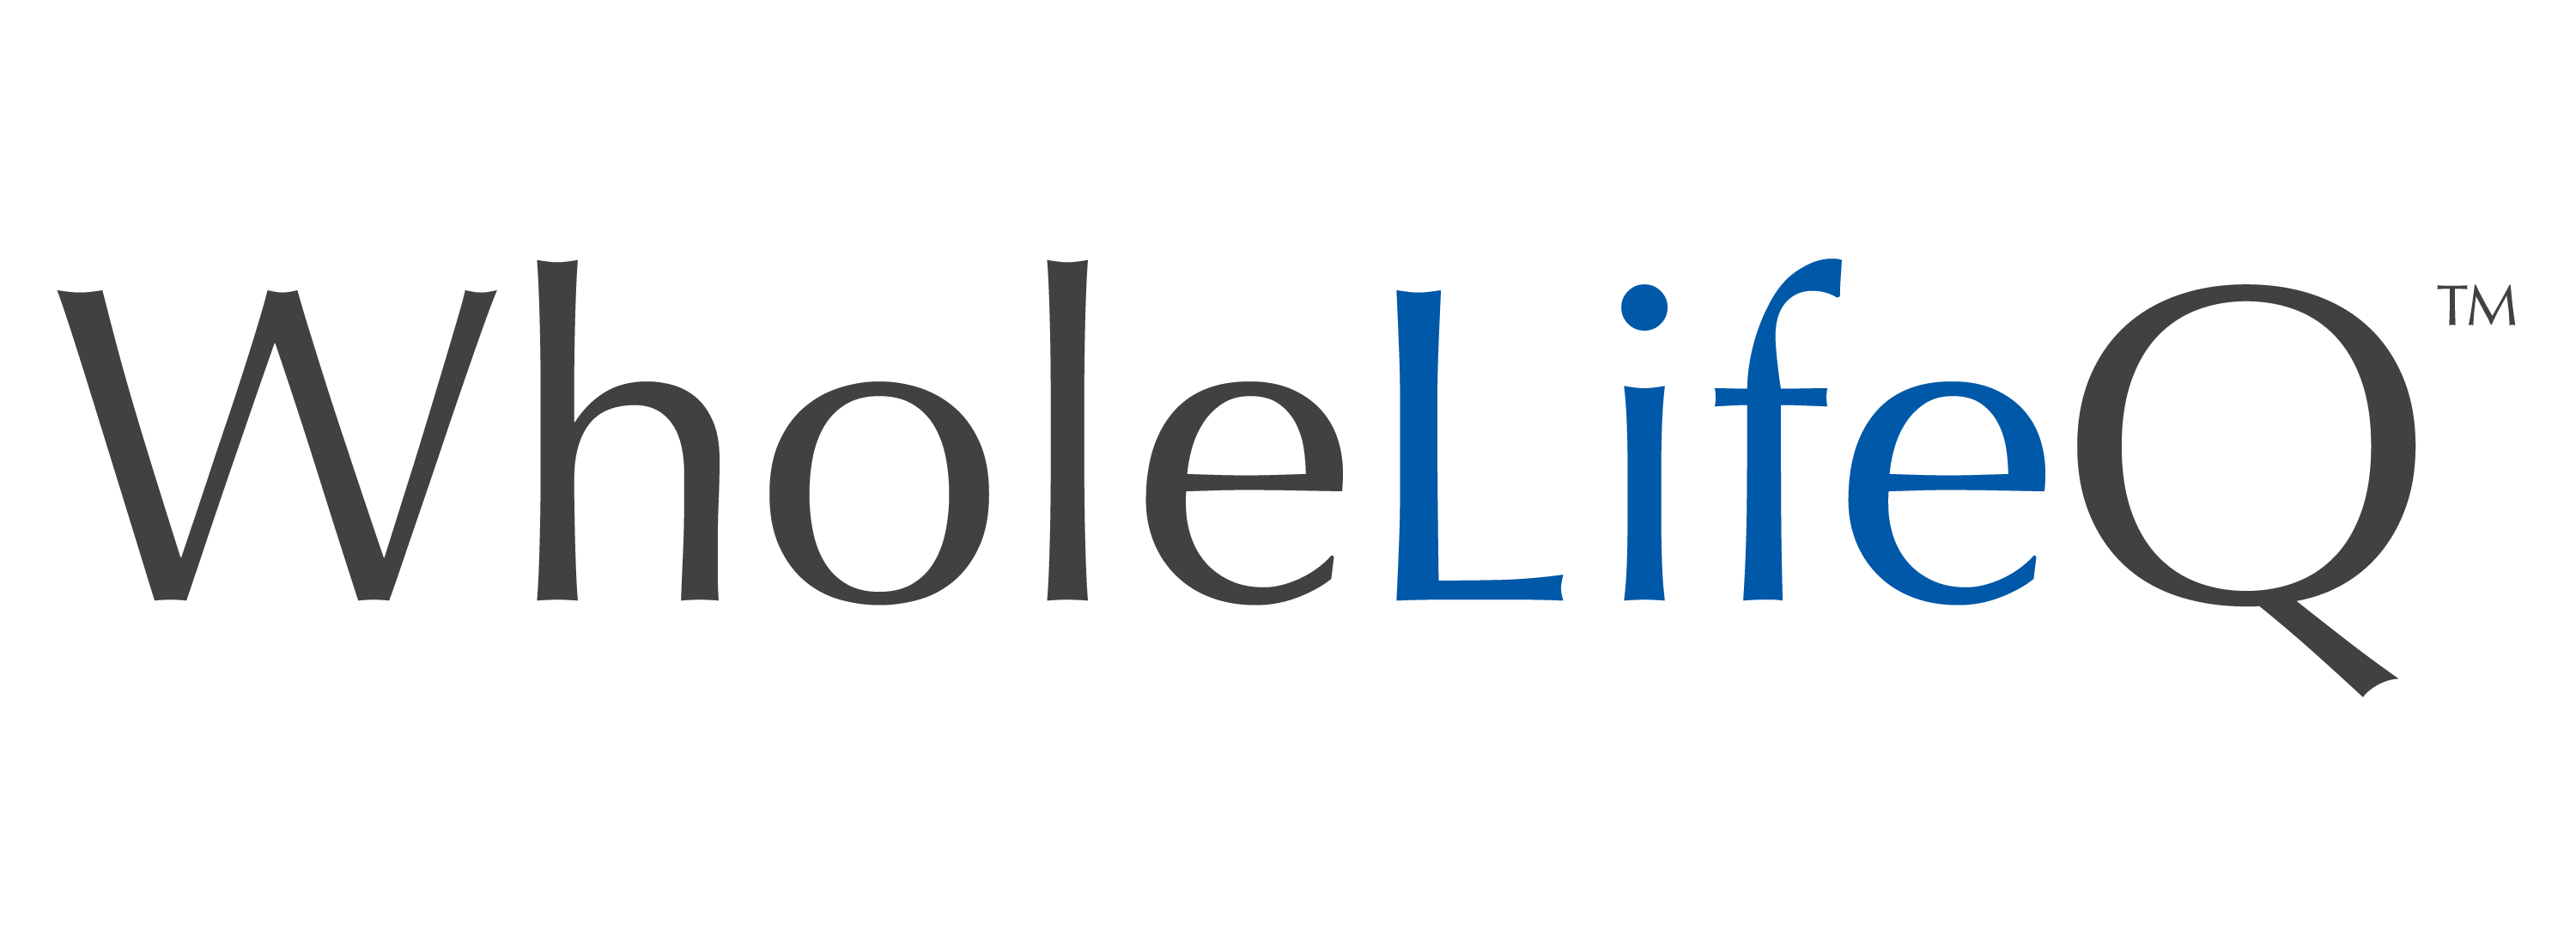 WholeLifeQ_Logo-04